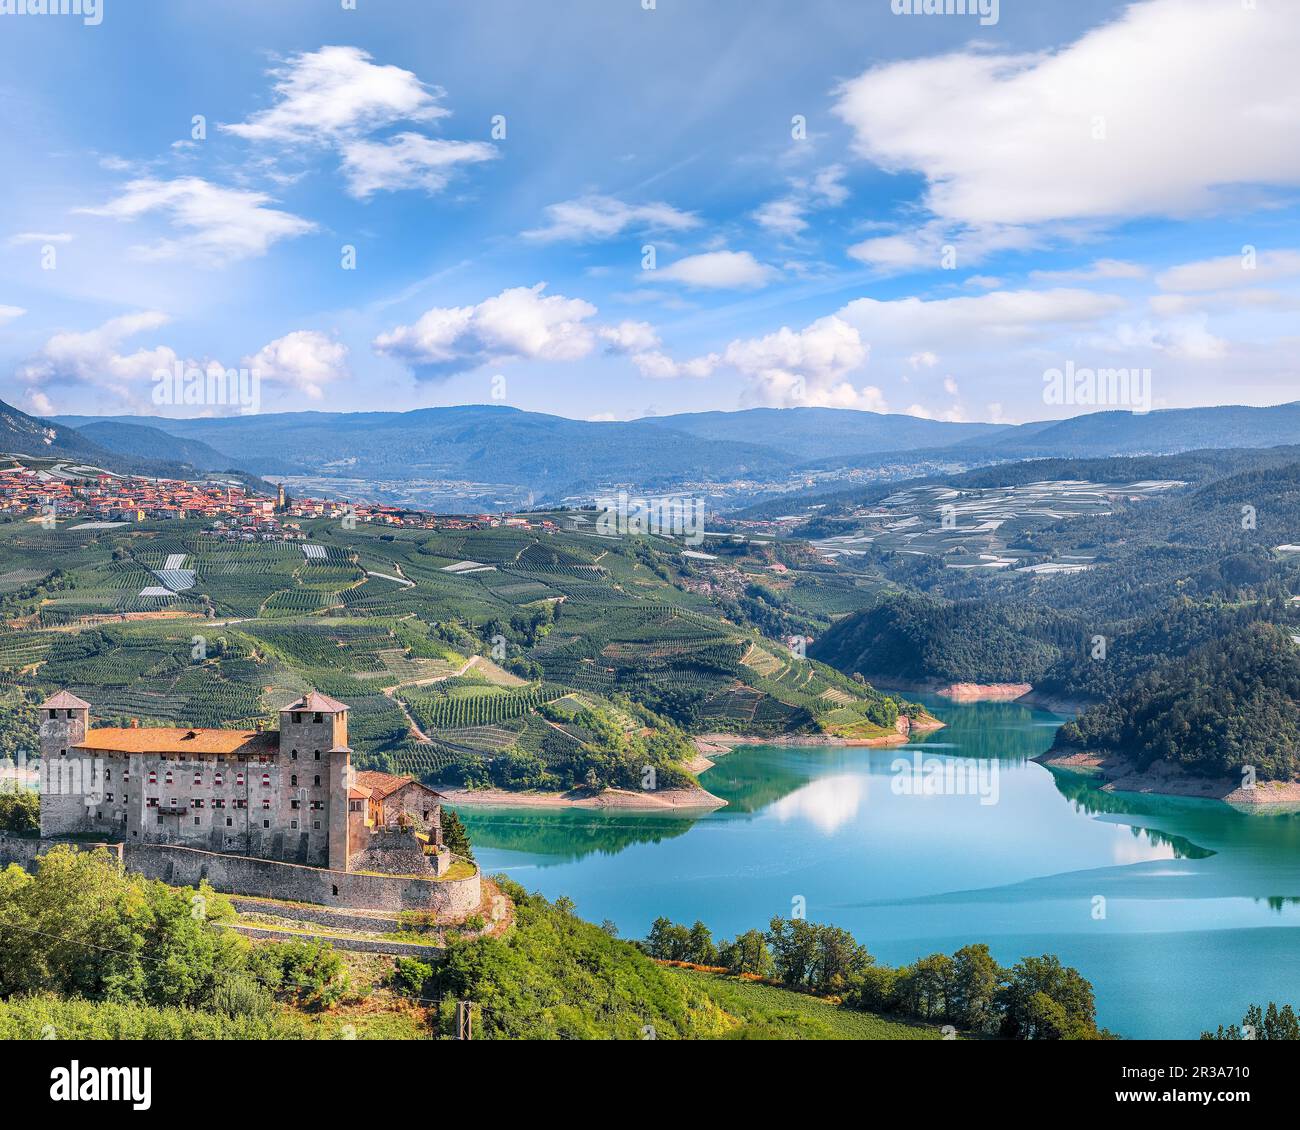 Fabelhafte Aussicht auf das Cles Castel, den Santa Giustina See und viele Apfelplantagen. Standort: Cles, Region Trentino-Südtirol, Italien, Europa Stockfoto